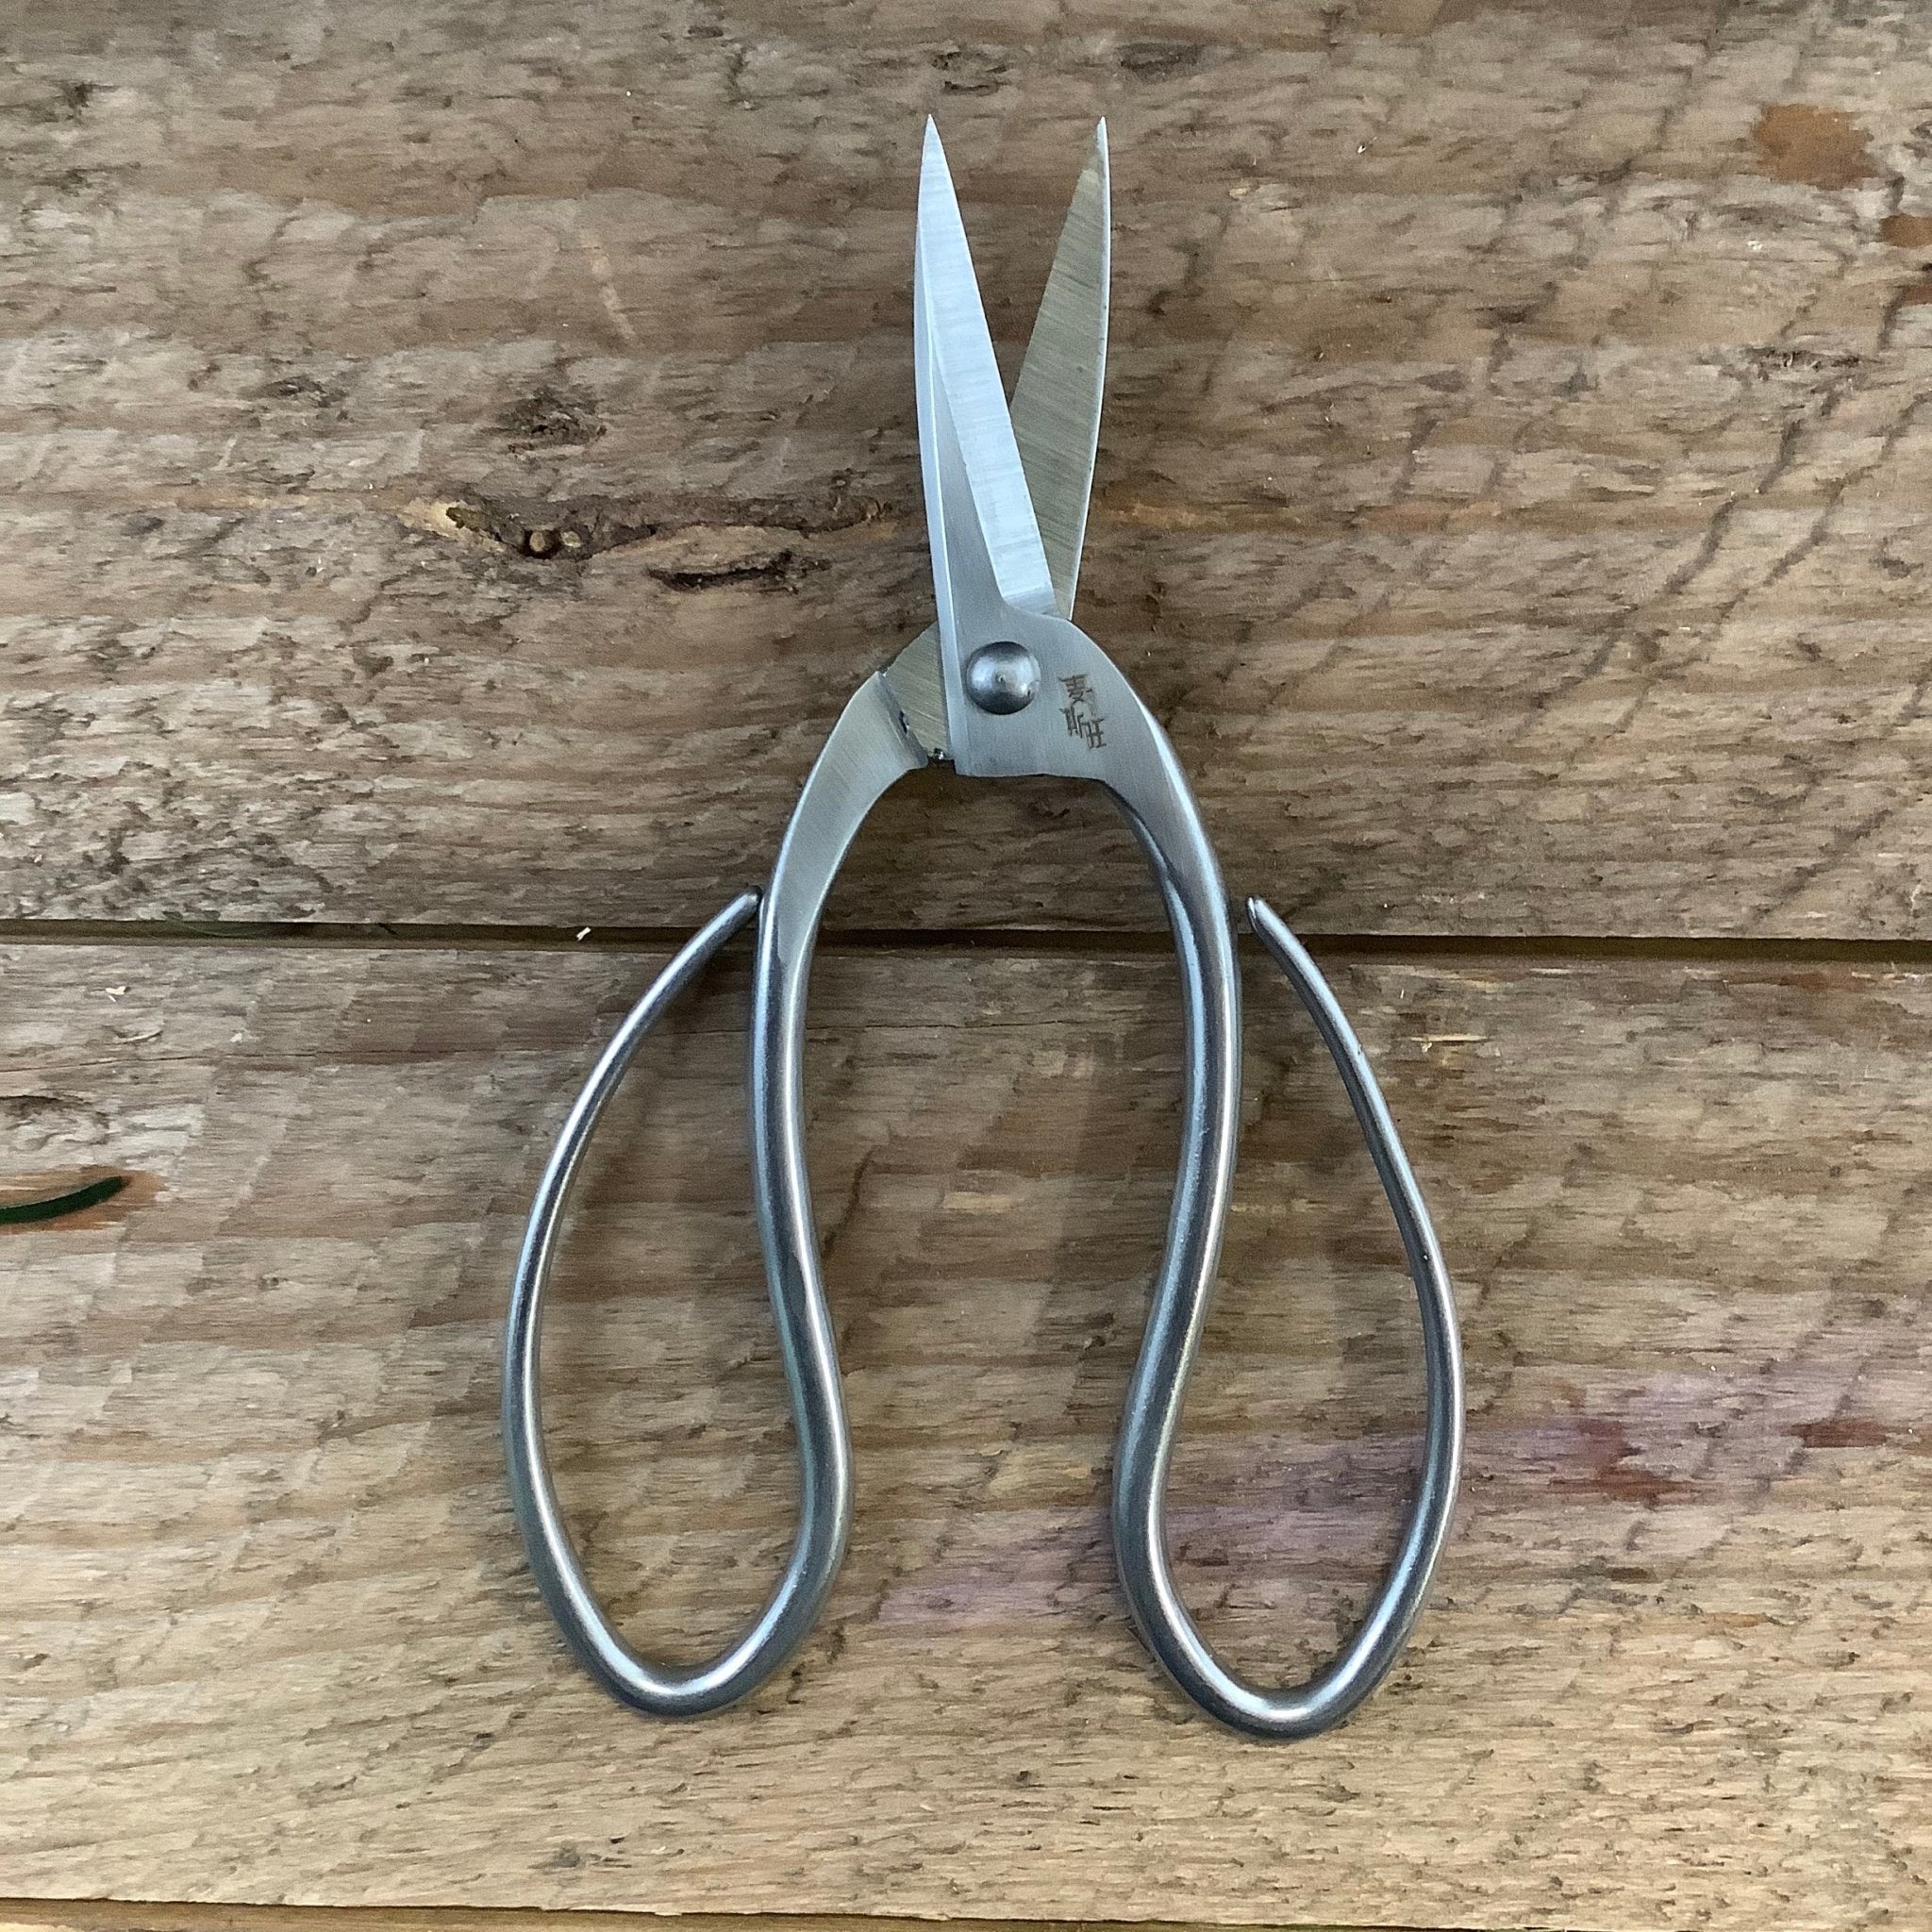 https://shop.thecelticfarm.com/cdn/shop/products/stainless-garden-scissors-pruning-shearsprunerssecateursclippers-778660_1024x1024@2x.jpg?v=1682337255